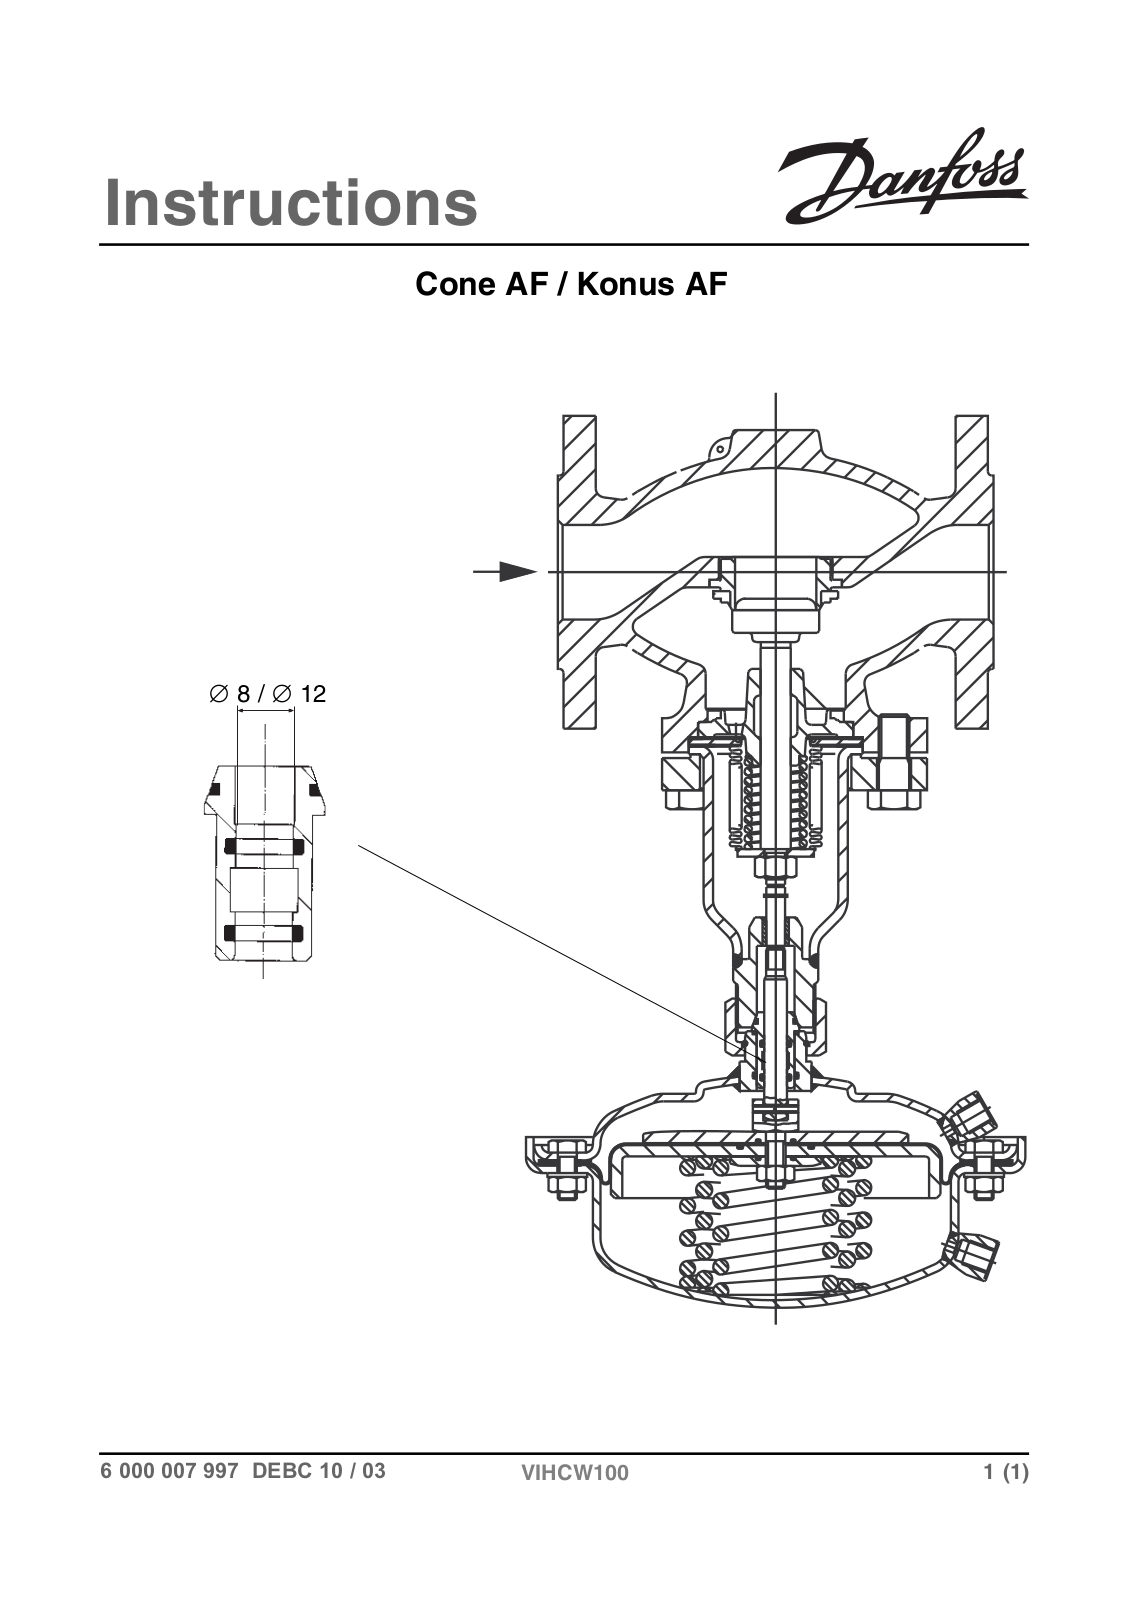 Danfoss Cone AF, Konus AF Installation guide